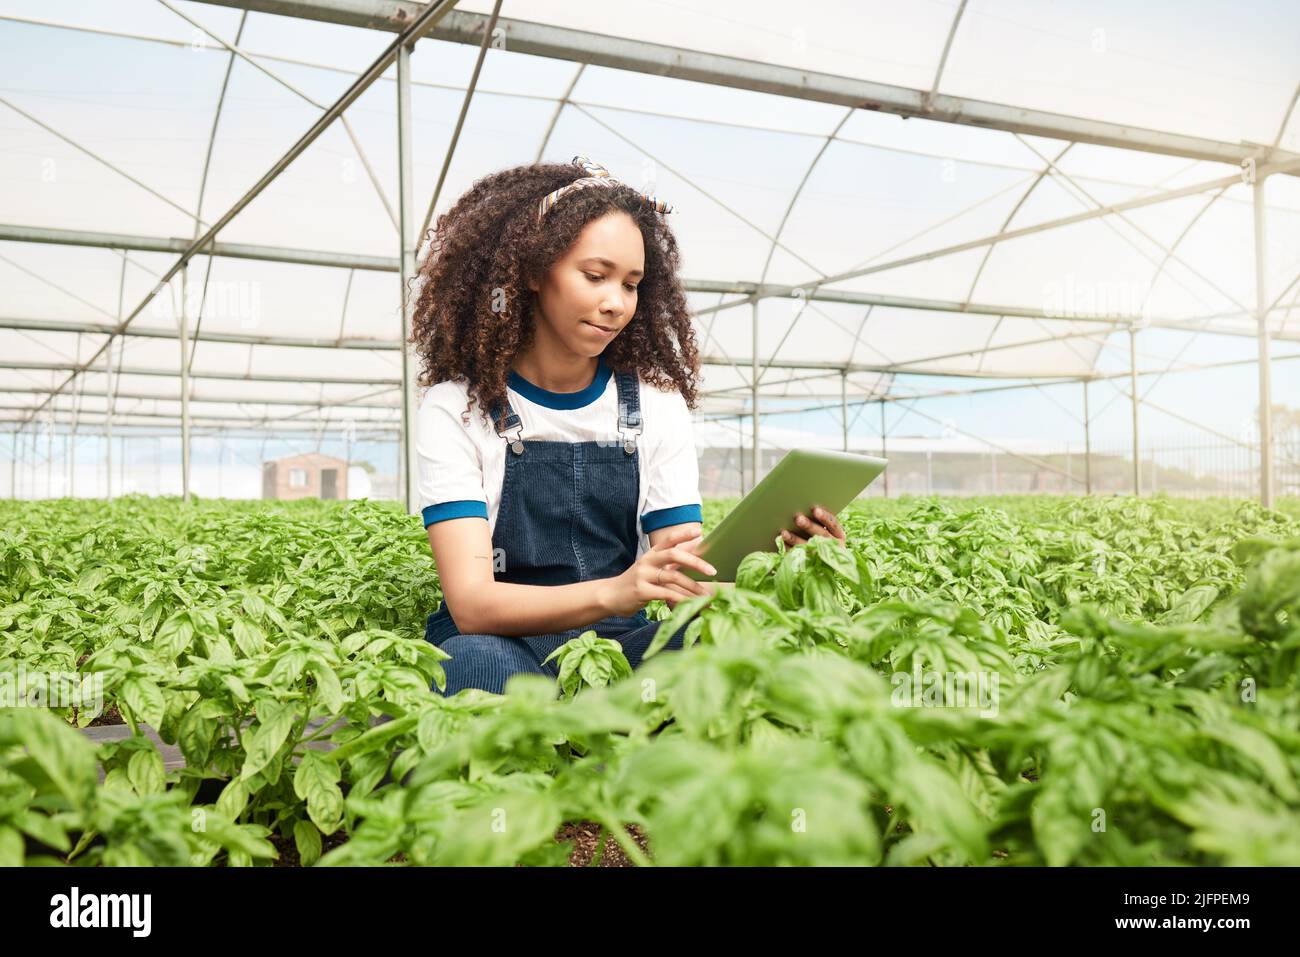 Incorporación de nuevos métodos y técnicas. Fotografía de una mujer joven usando una tableta digital mientras trabajaba en una granja. Foto de stock